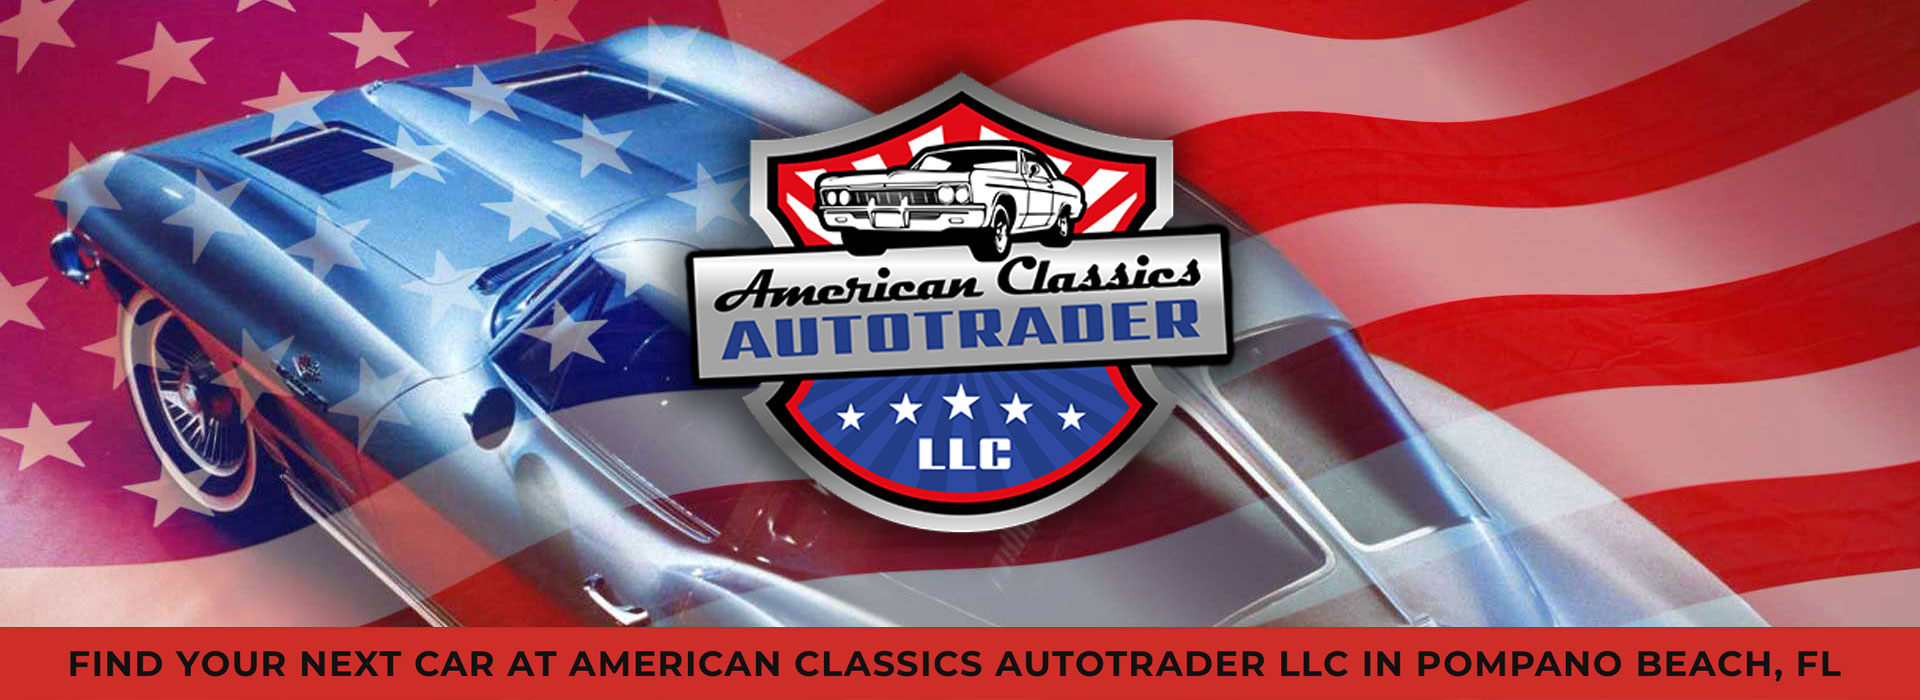 American Classics Autotrader LLC